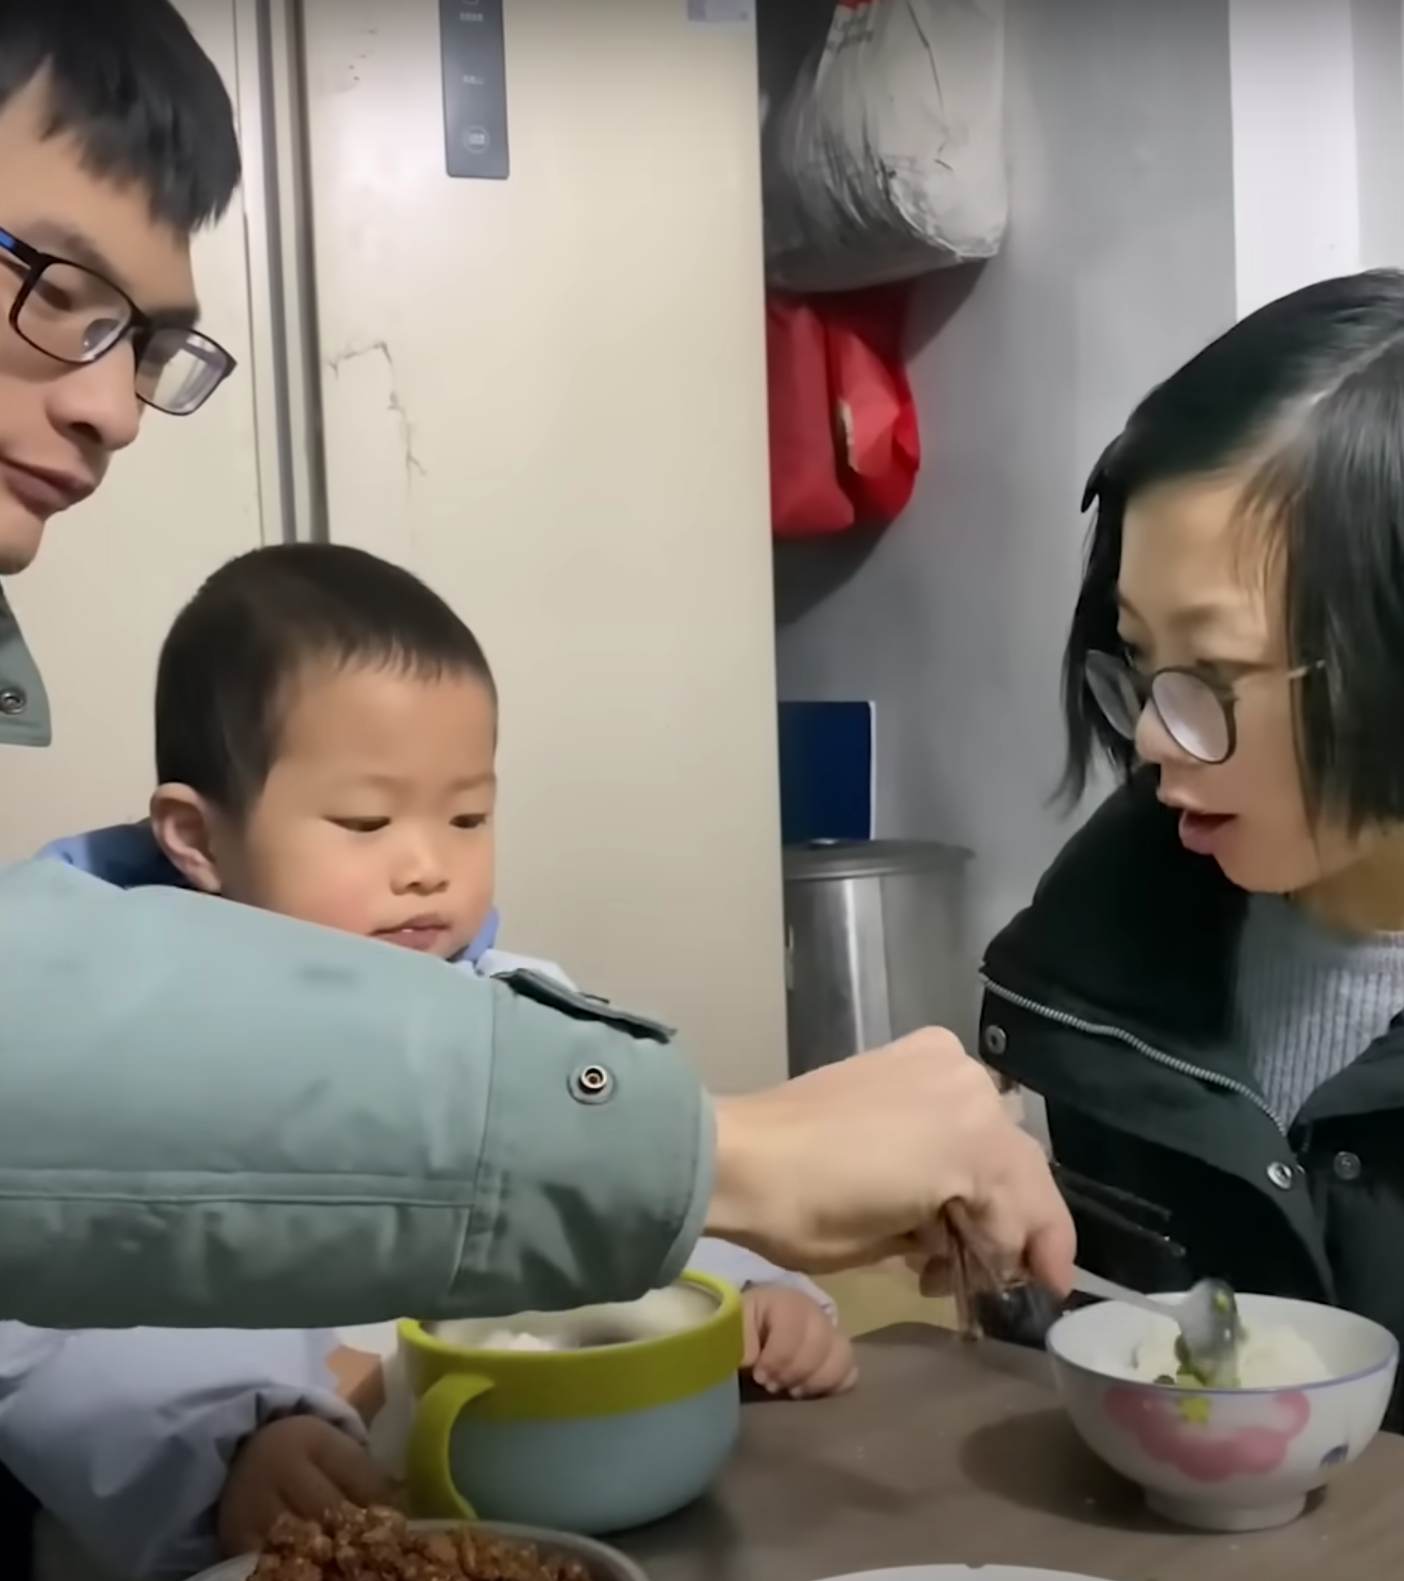 Pomelo und seine Eltern genießen ihr gemeinsames Leben. | Quelle: Youtube.com/South China Morning Post